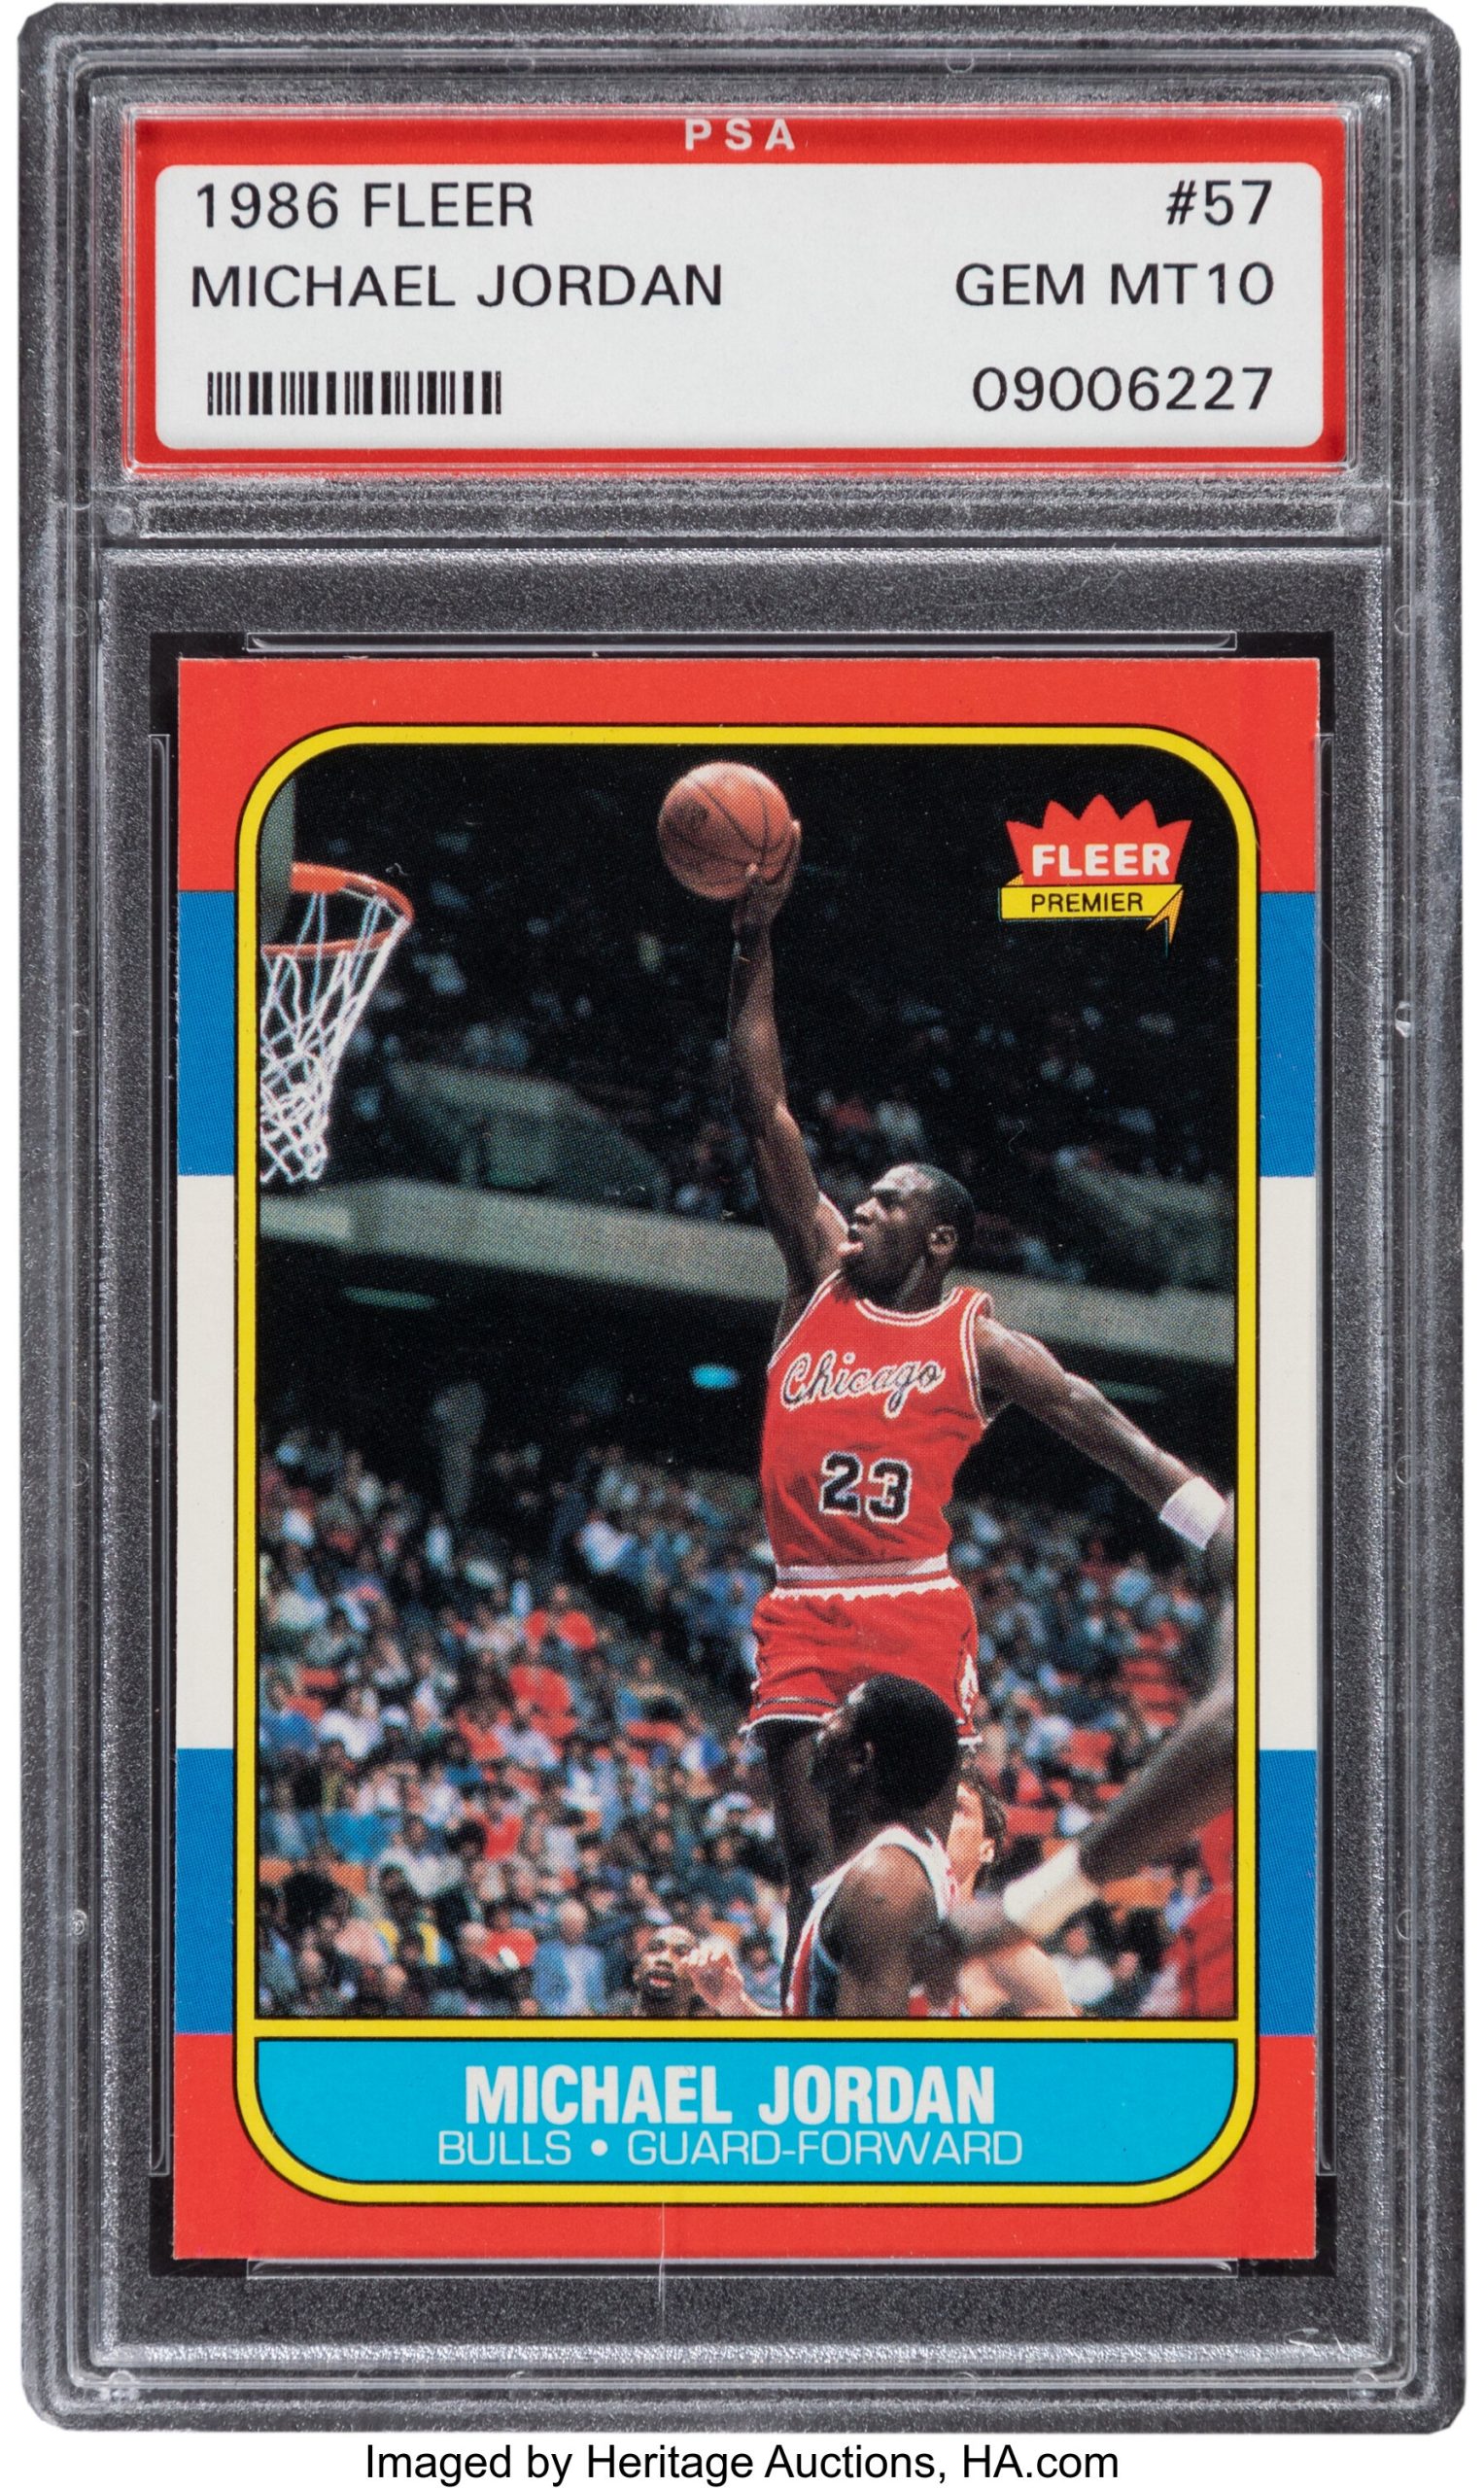 Michael Jordan 1986 Fleer Rookie Card